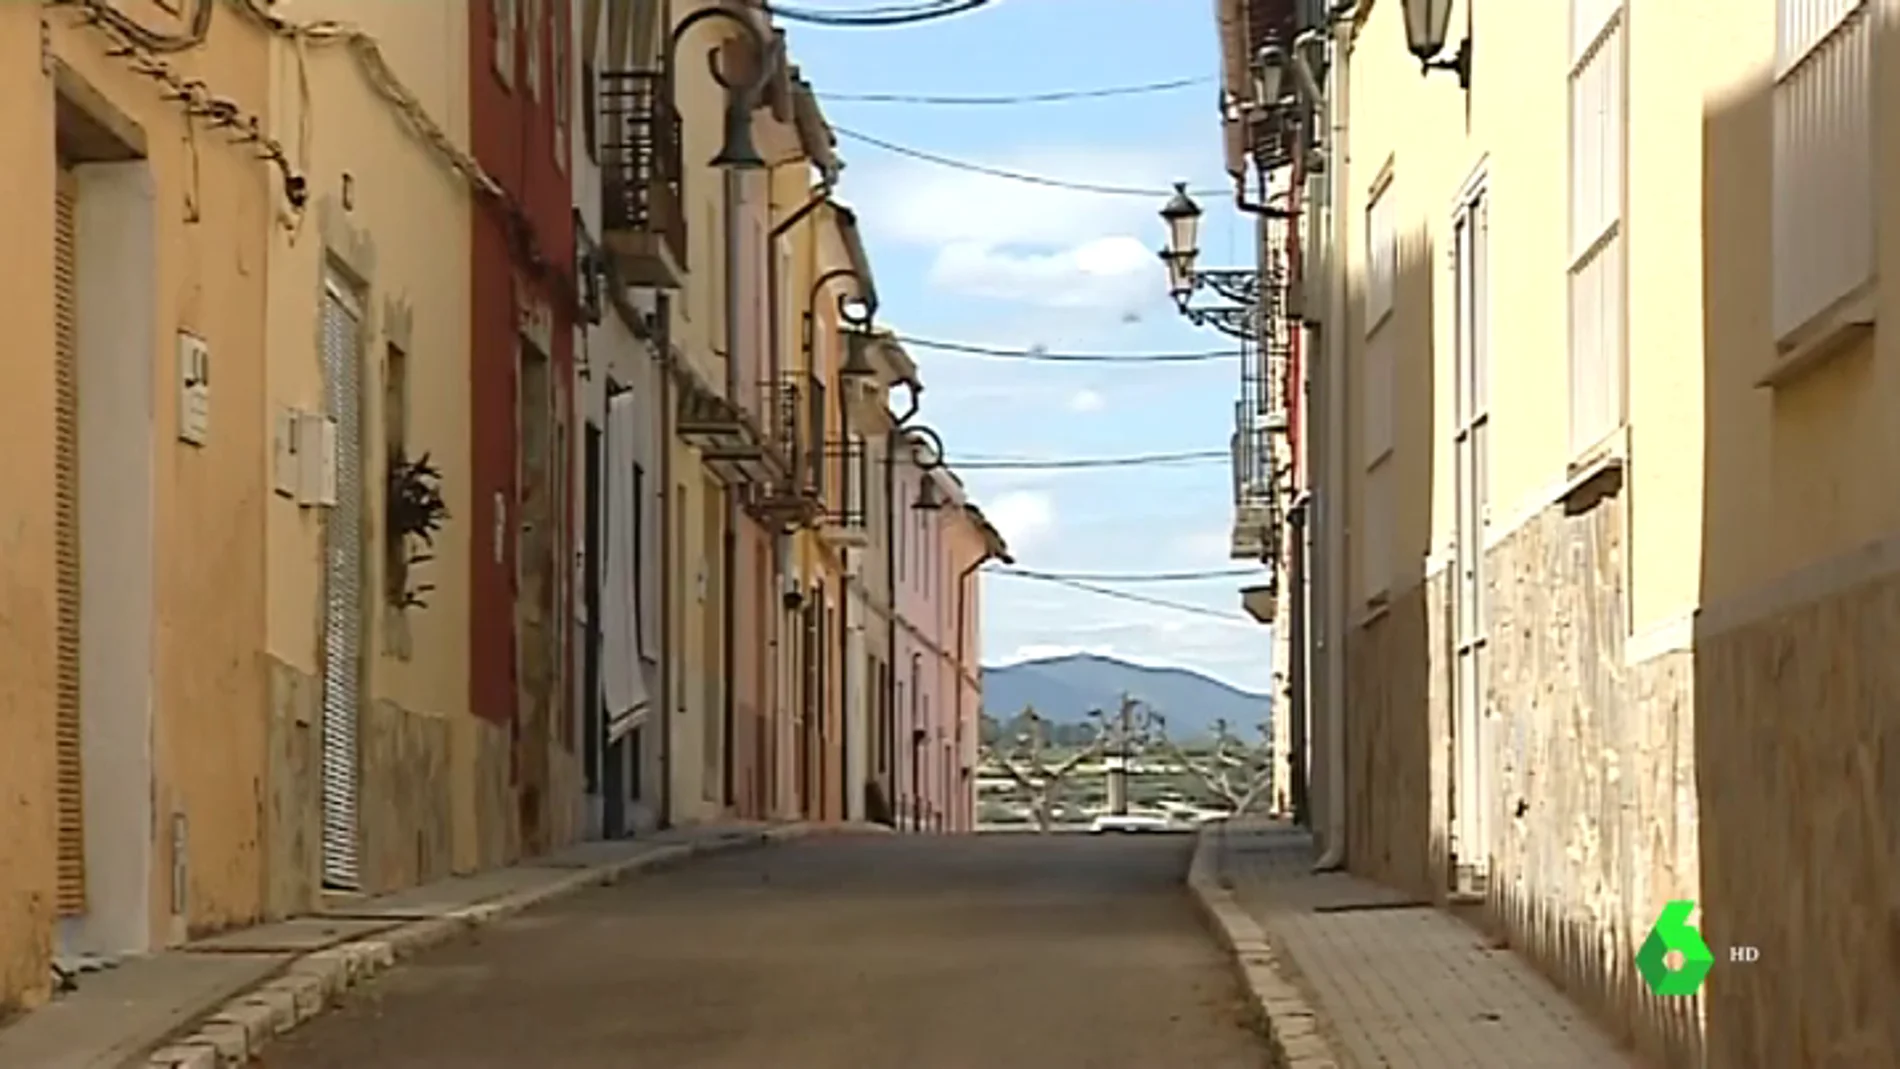 Sempere es el pueblo más vacío de Valencia: hay 35 personas censadas y no tienen ni farmacia, ni banco, ni bar